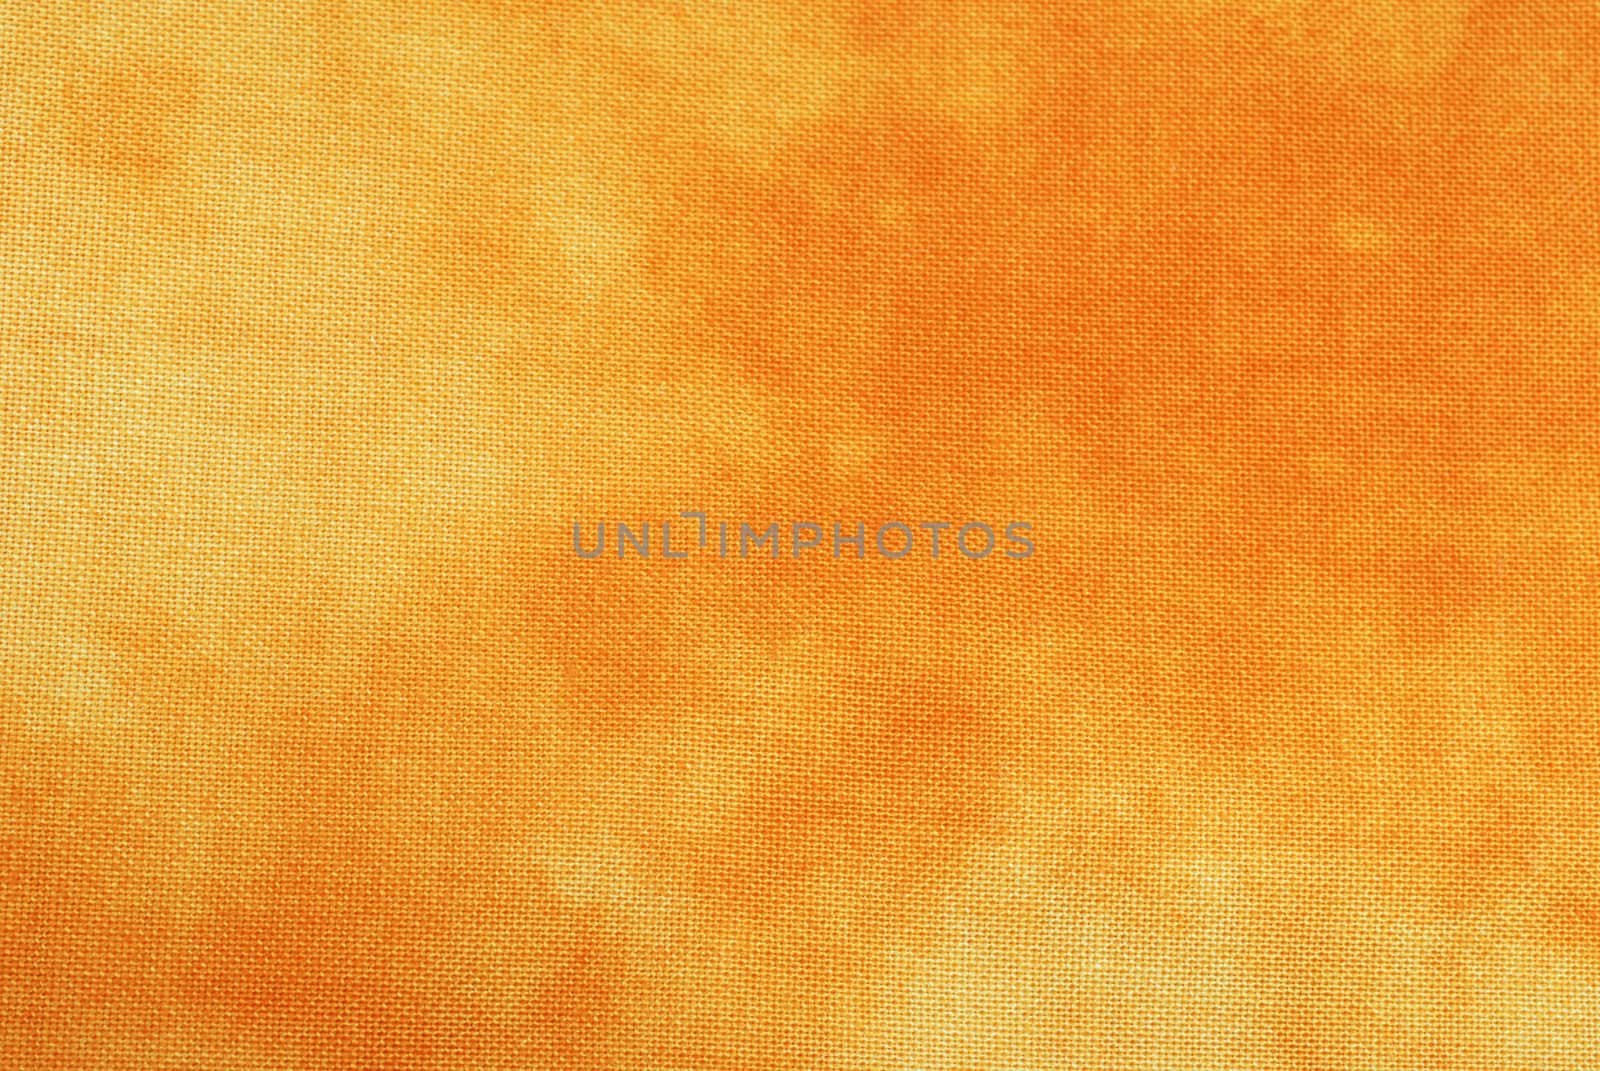 Orange Tye-Dyed Background by dehooks